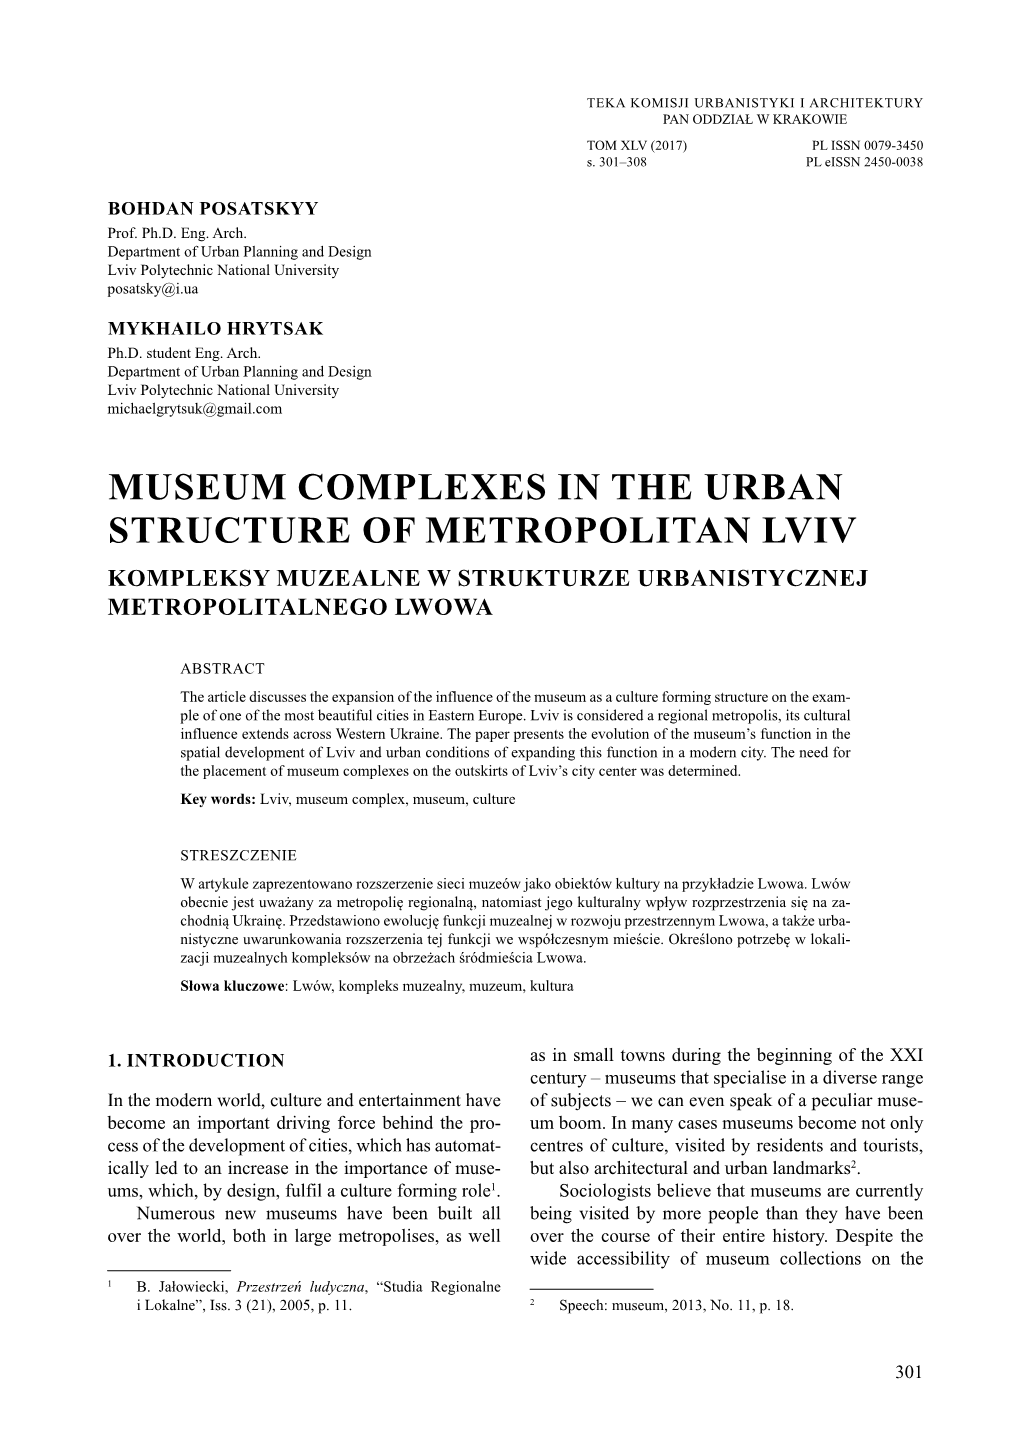 Museum Complexes in the Urban Structure of Metropolitan Lviv Kompleksy Muzealne W Strukturze Urbanistycznej Metropolitalnego Lwowa